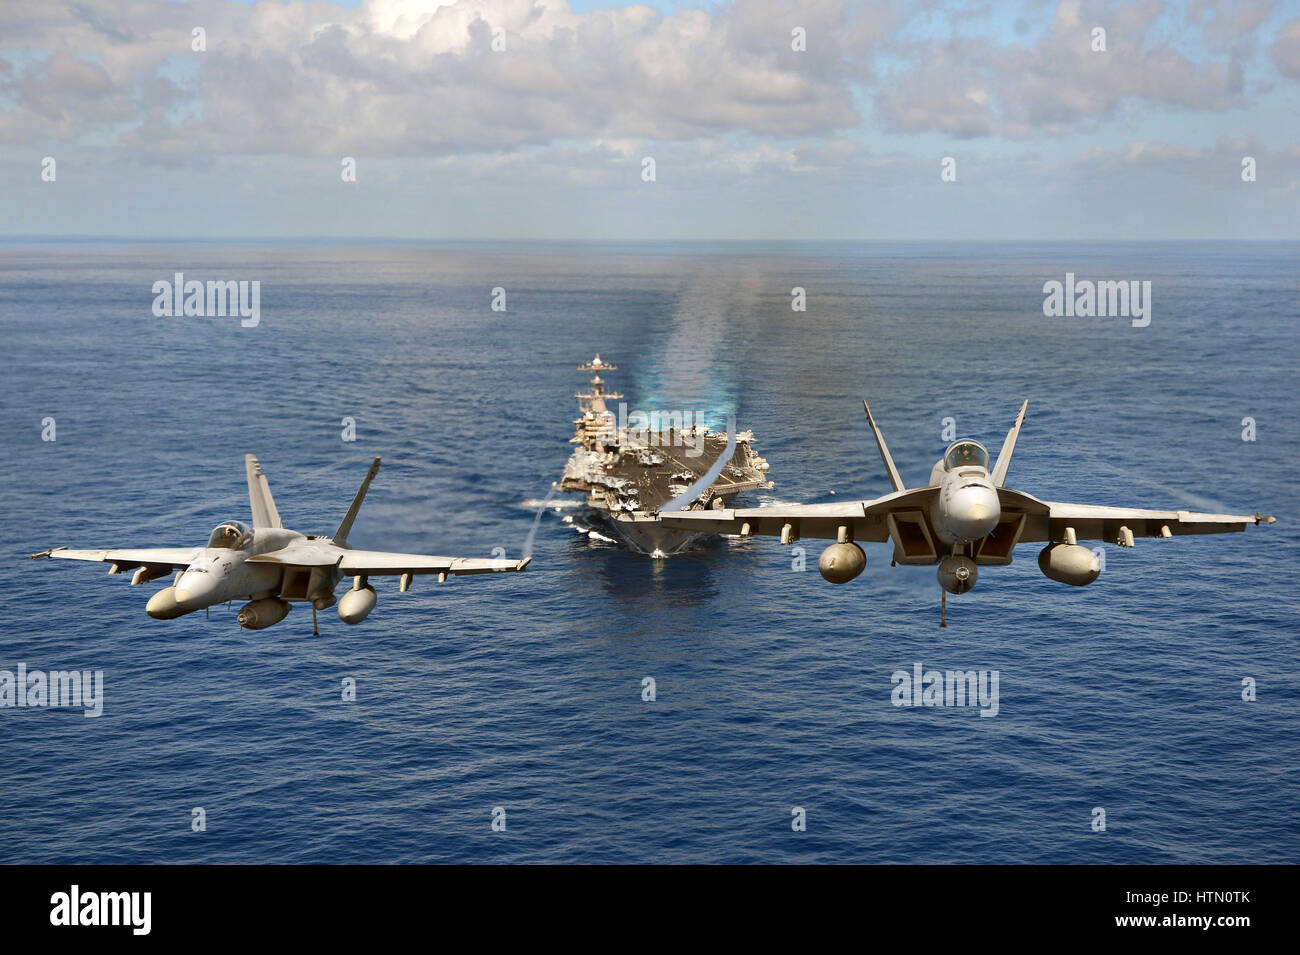 Marine américaine F/A-18 Super Hornet voler en formation en face de la marine américaine de classe Nimitz porte-avions USS John C. Stennis, 24 avril 2013 dans l'océan Pacifique. Banque D'Images